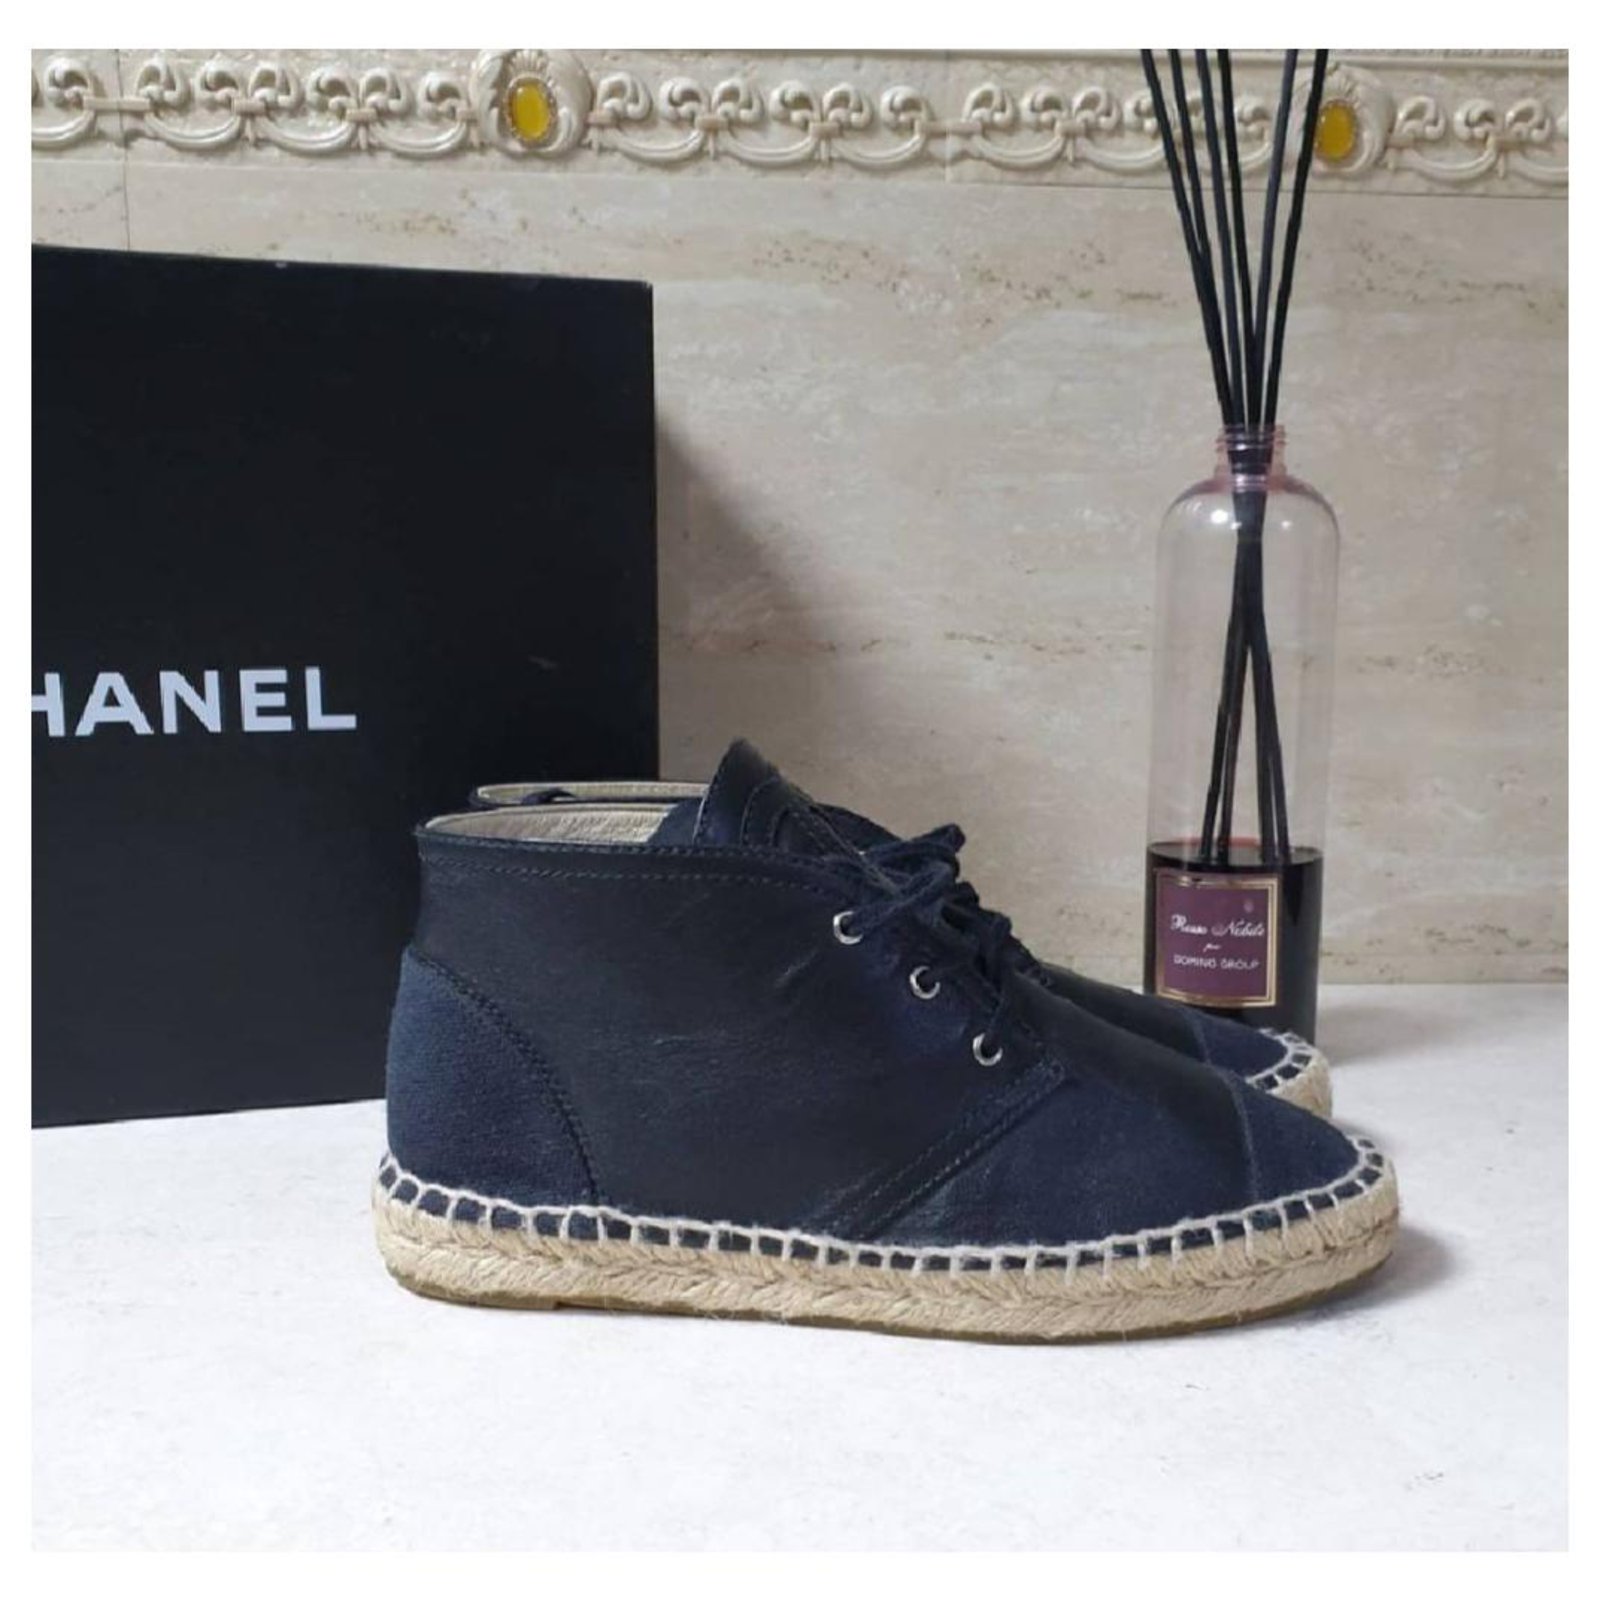 Espadrilles Chanel Chanel Black Leather CC Logo Espadrilles Size 37